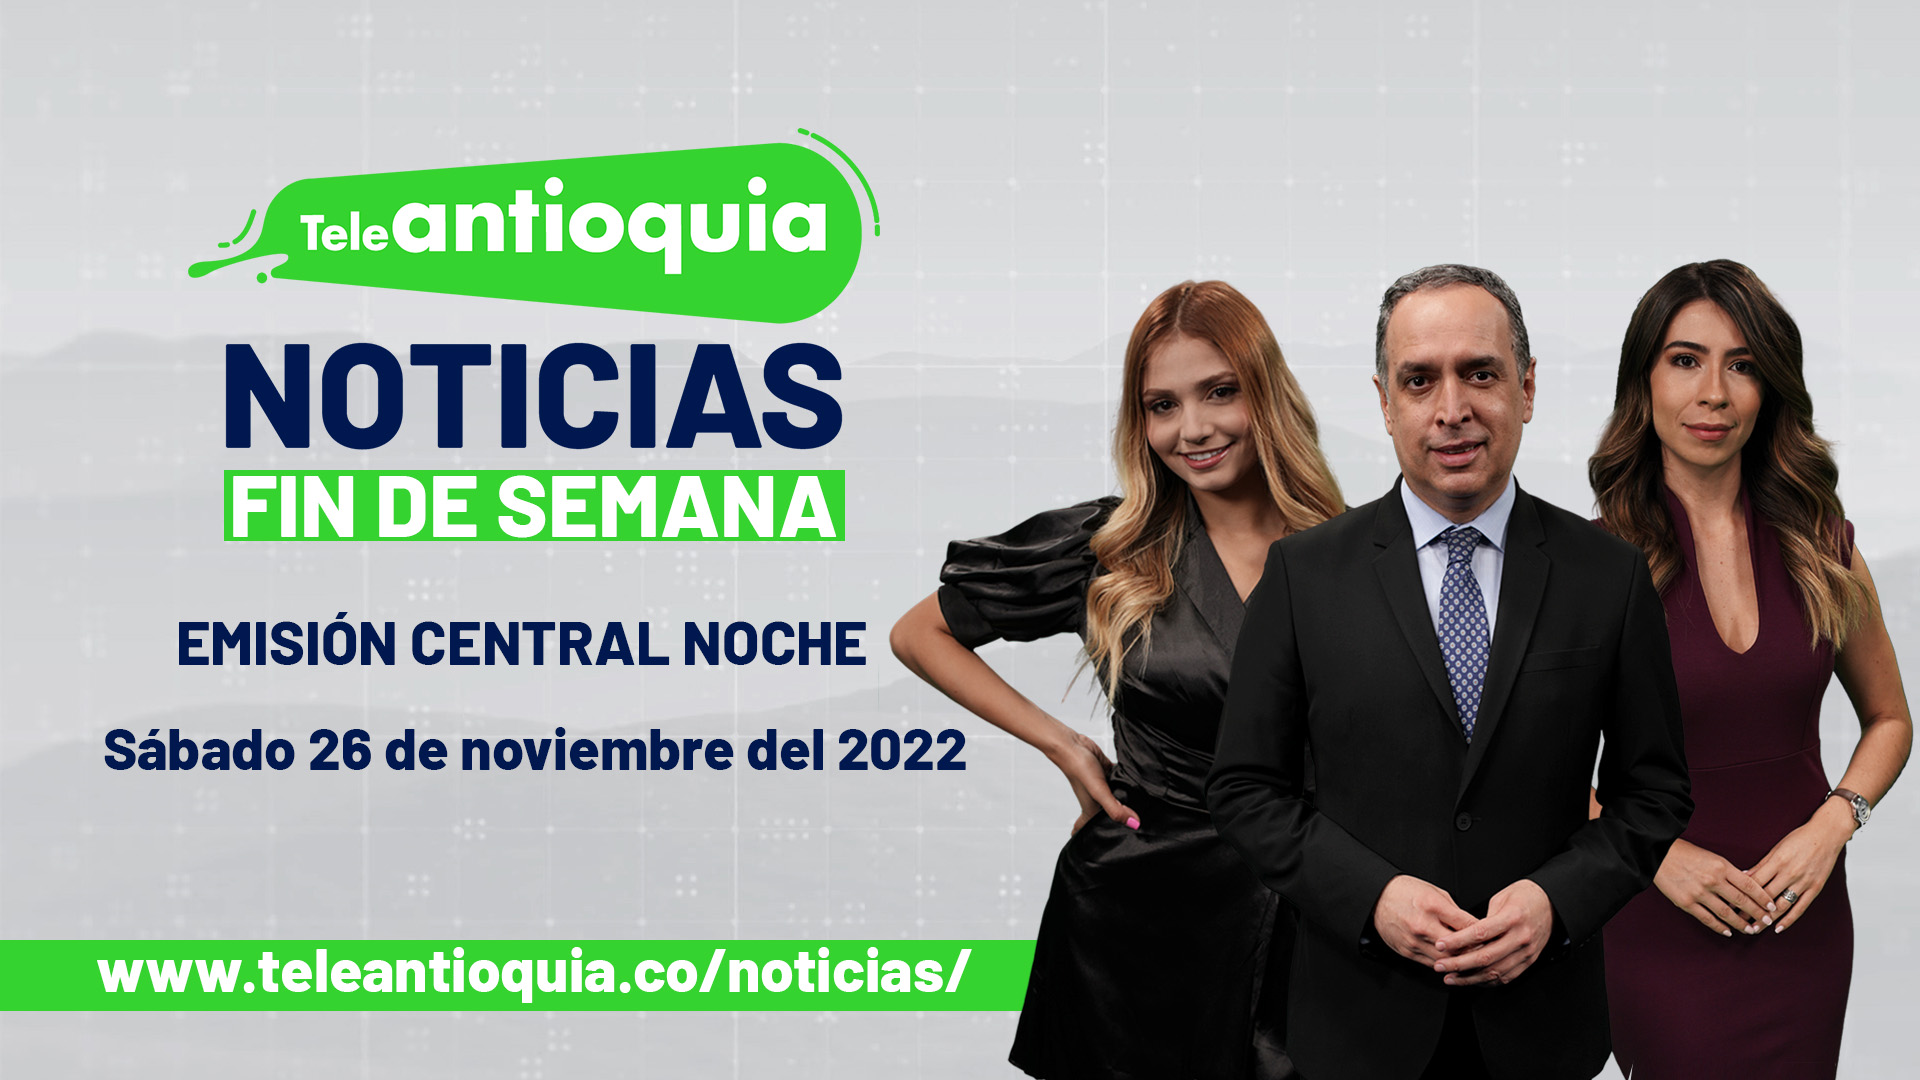 Teleantioquia Noticias - sábado 26 de noviembre del 2022 - 7:00 p.m.